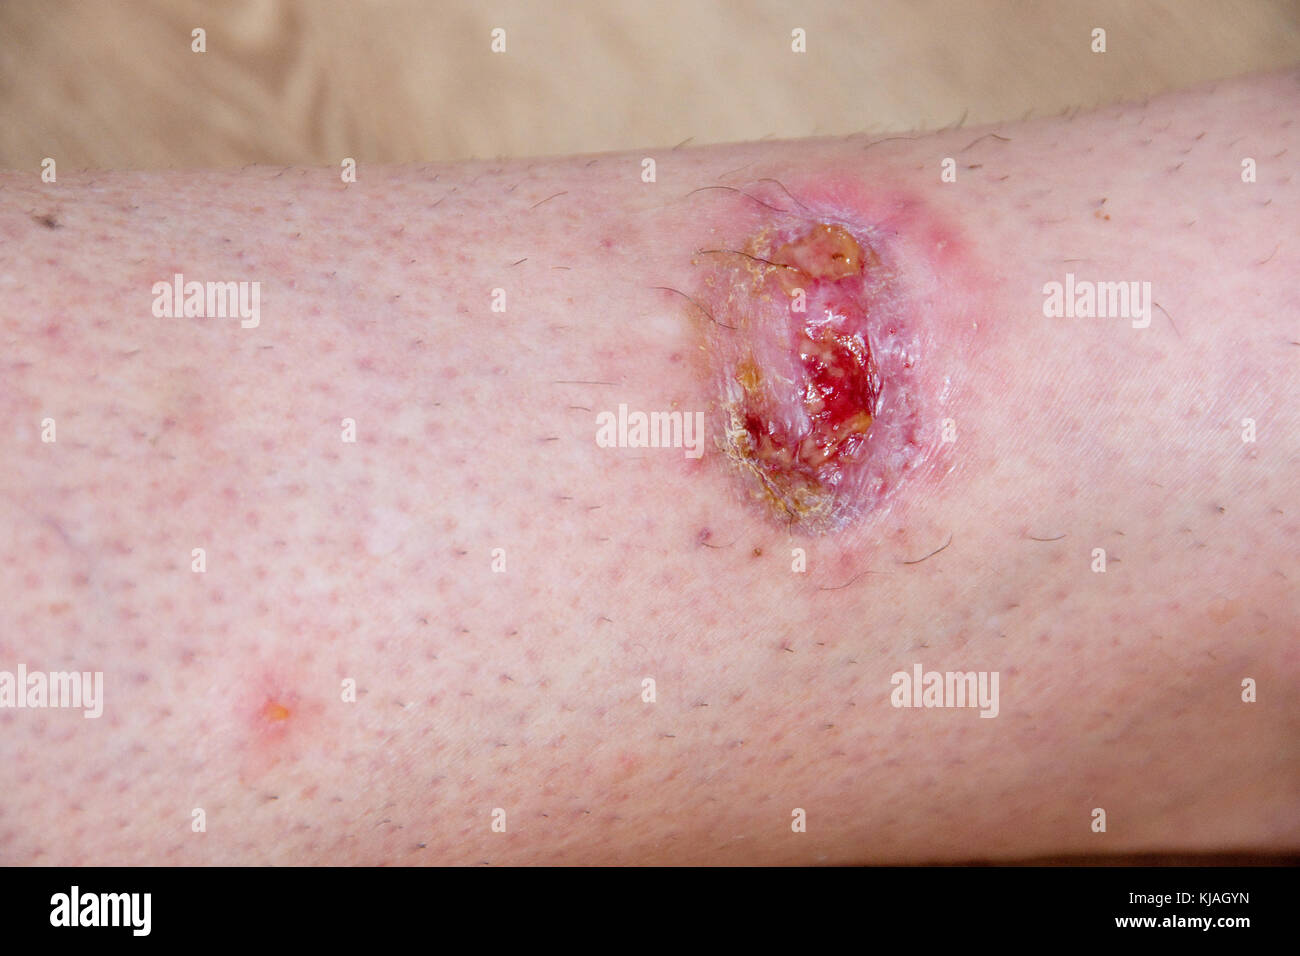 Post ferita operatoria lotte per guarire come innesto di pelle non riesce :  aprire mal avvolto su shin inferiore a seguito della rimozione di un tumore  Foto stock - Alamy